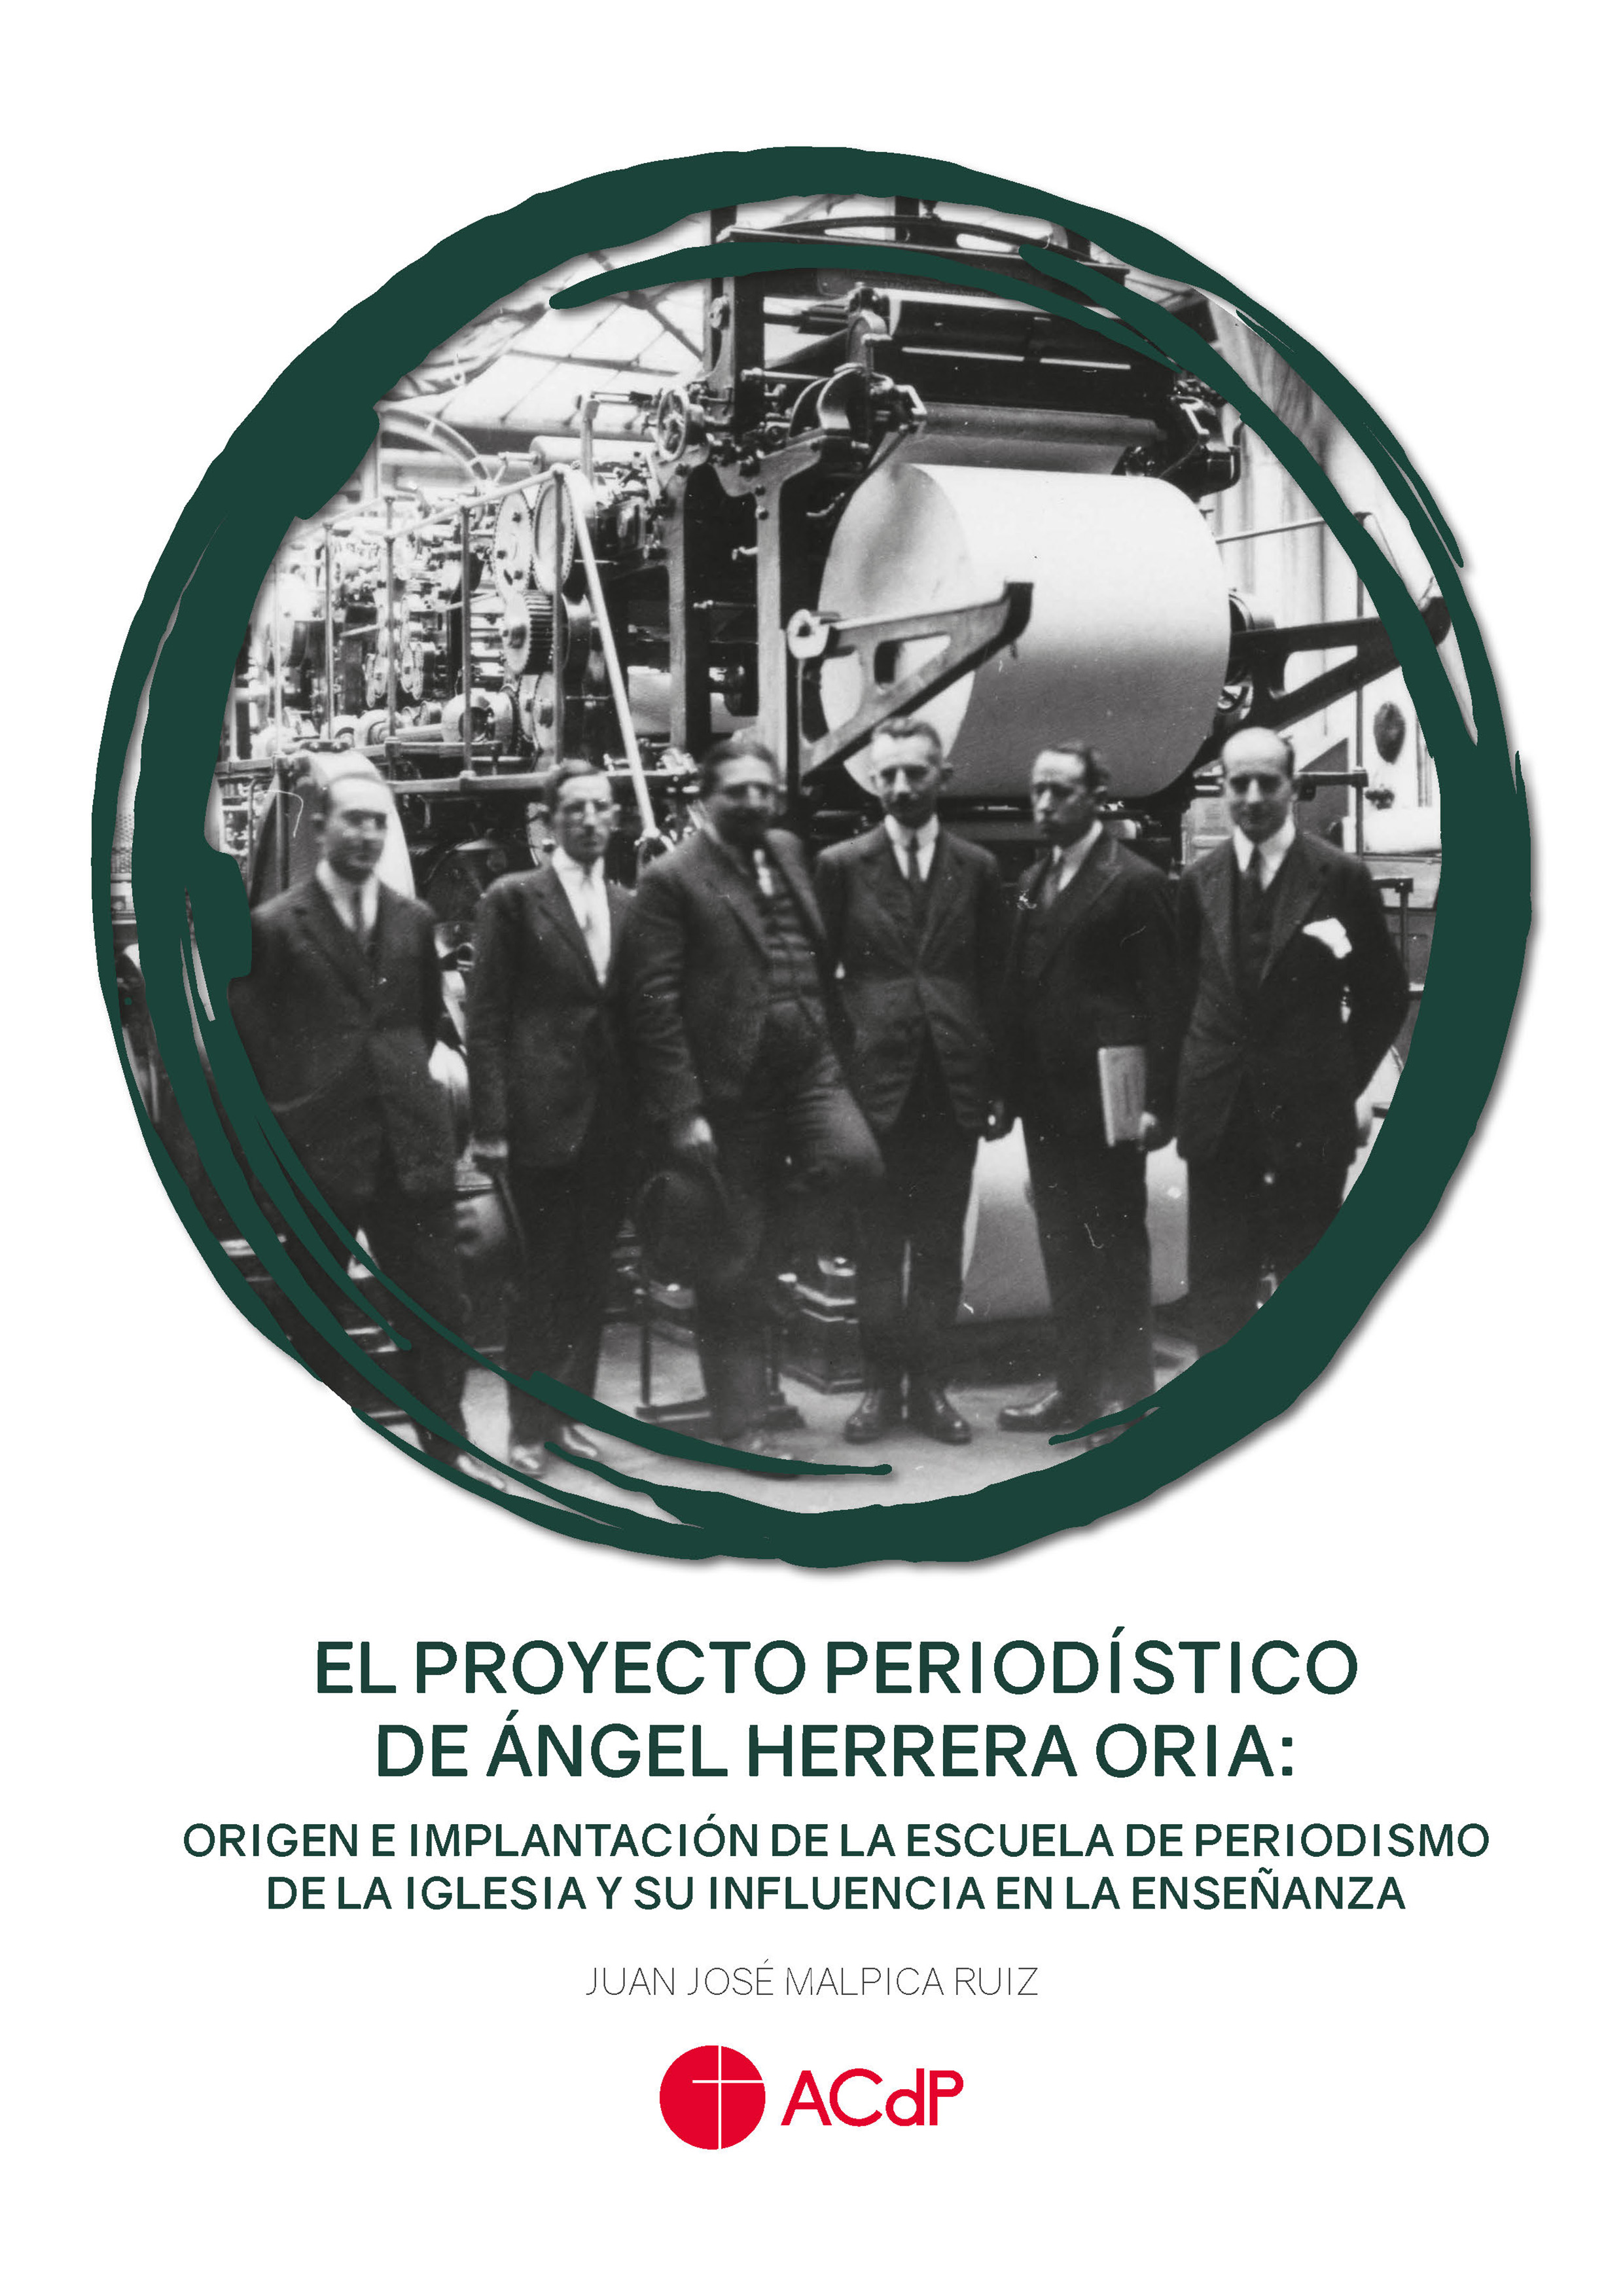 El proyecto periodístico de Ángel Herrera Oria